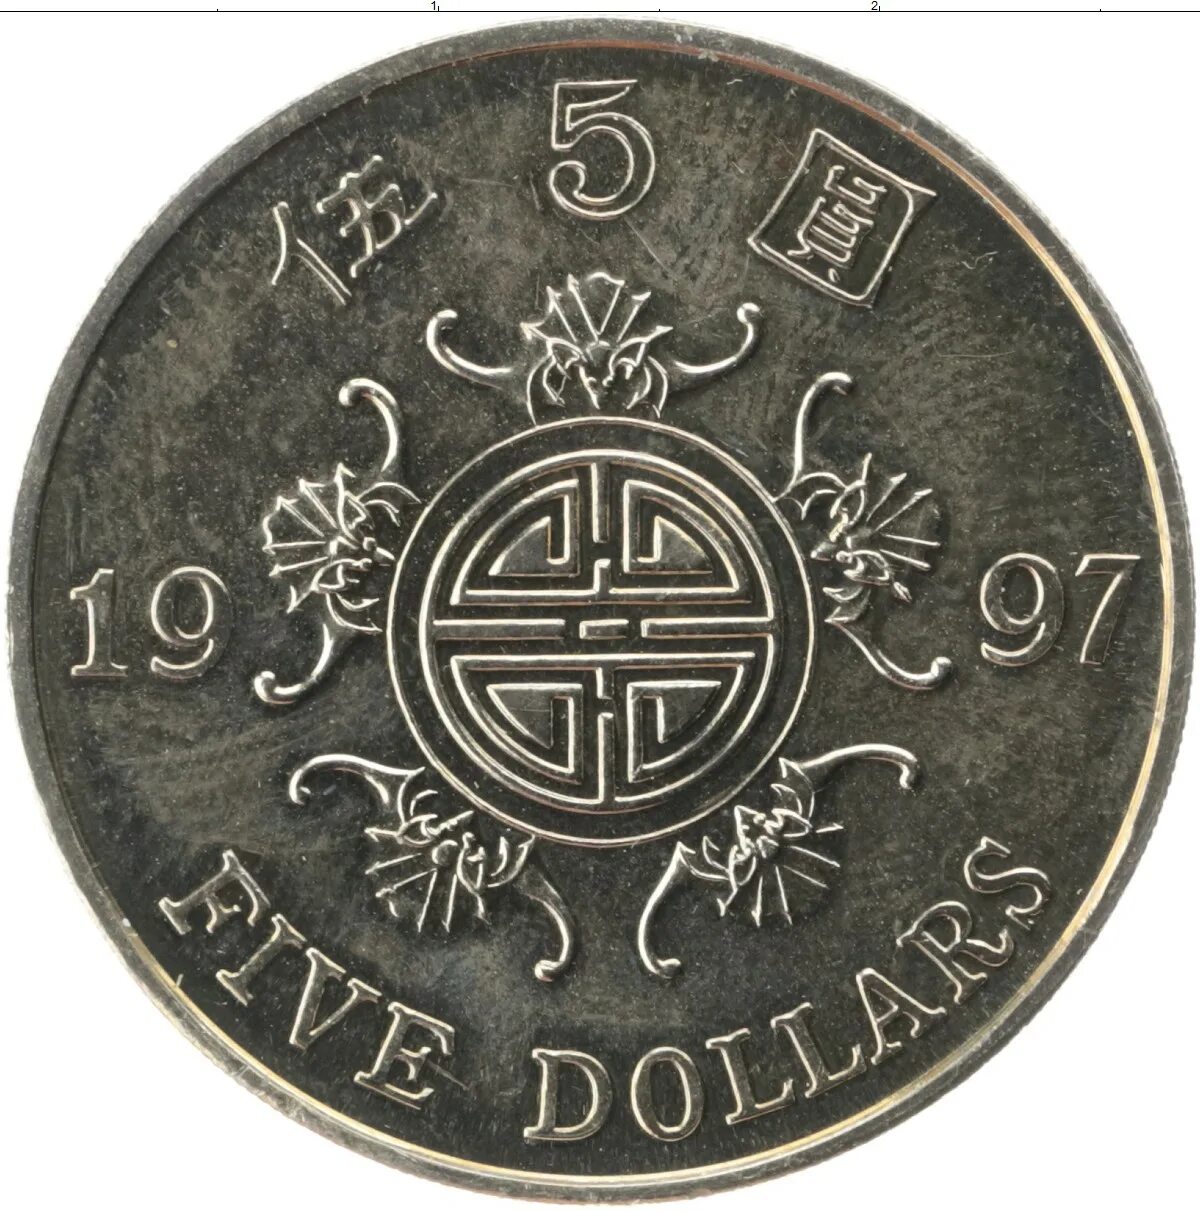 899 hkd в рублях. Монета 5 долларов Гонконг. Гонконгский доллар монеты. Гонконг валюта монеты. Монетка Гонконга.